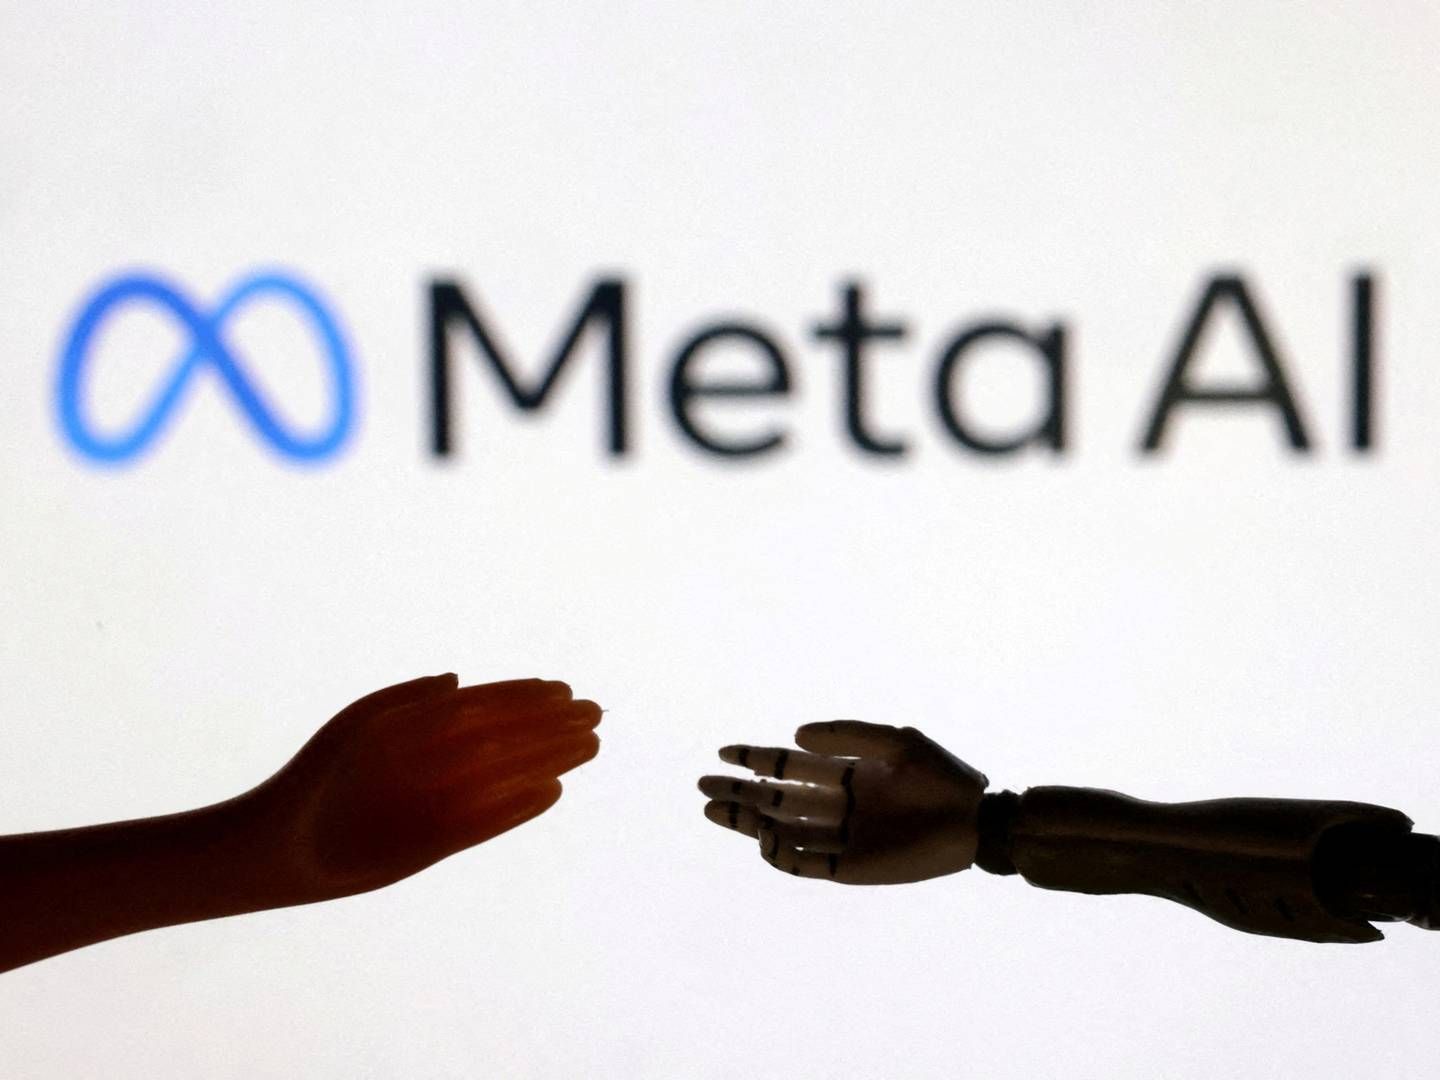 Meta vil fortsat prioritere og investere i ”sikker og ansvarlig udvikling af AI” og ”fortsat understøtte relevante initiativer på tværs af selskabet til ansvarlig udvikling og brug af AI," lyder det fra selskabets kommunikationschef, Jon Carvill, i notatet. | Foto: Dado Ruvic